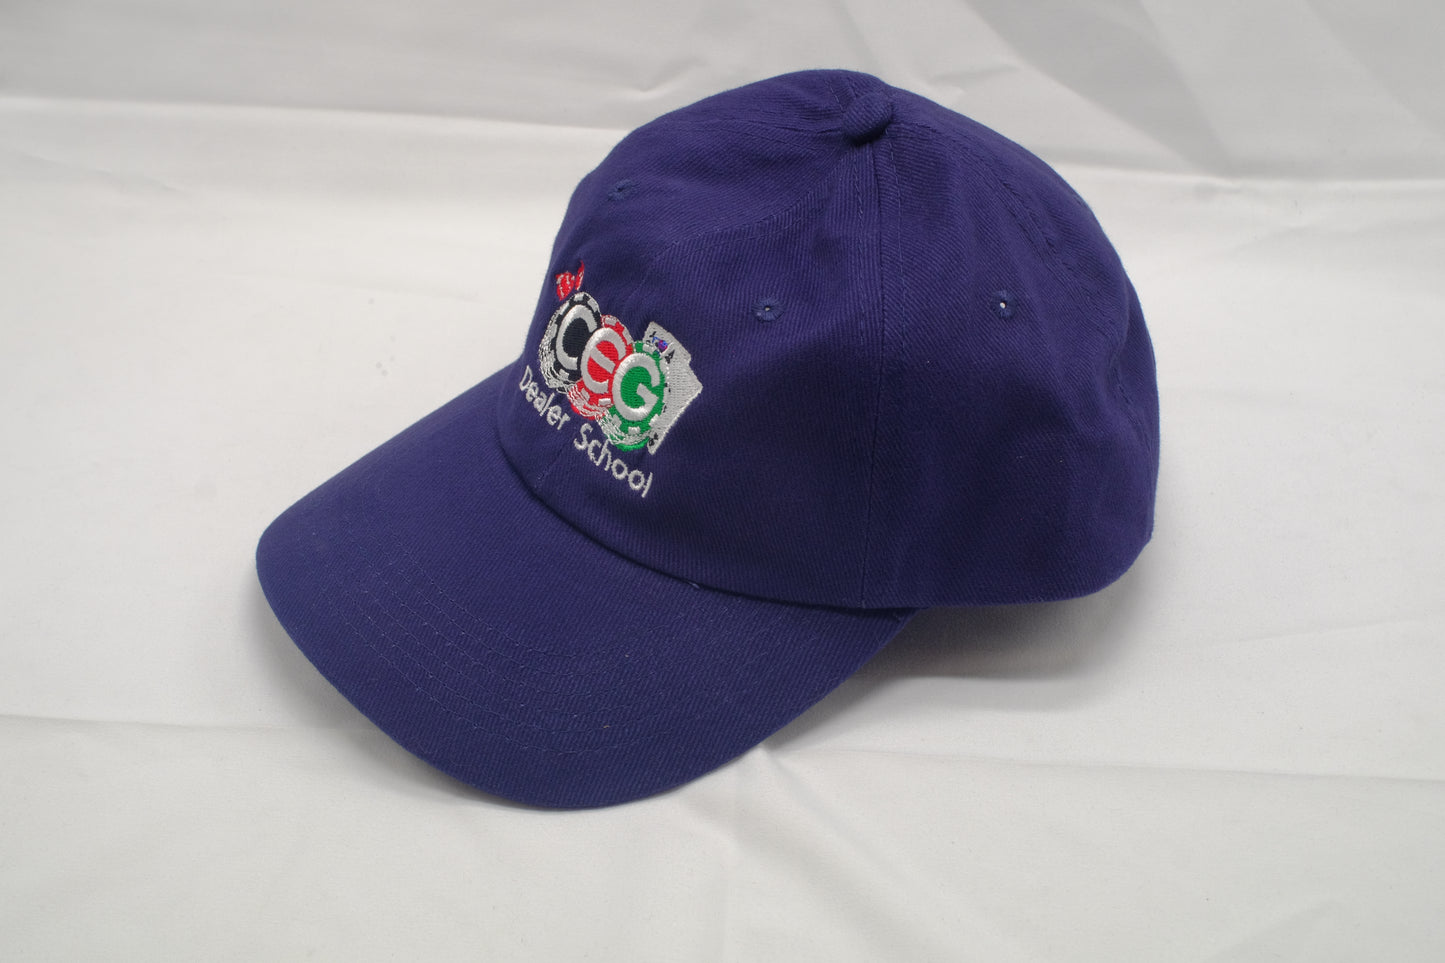 Original CEG Hat